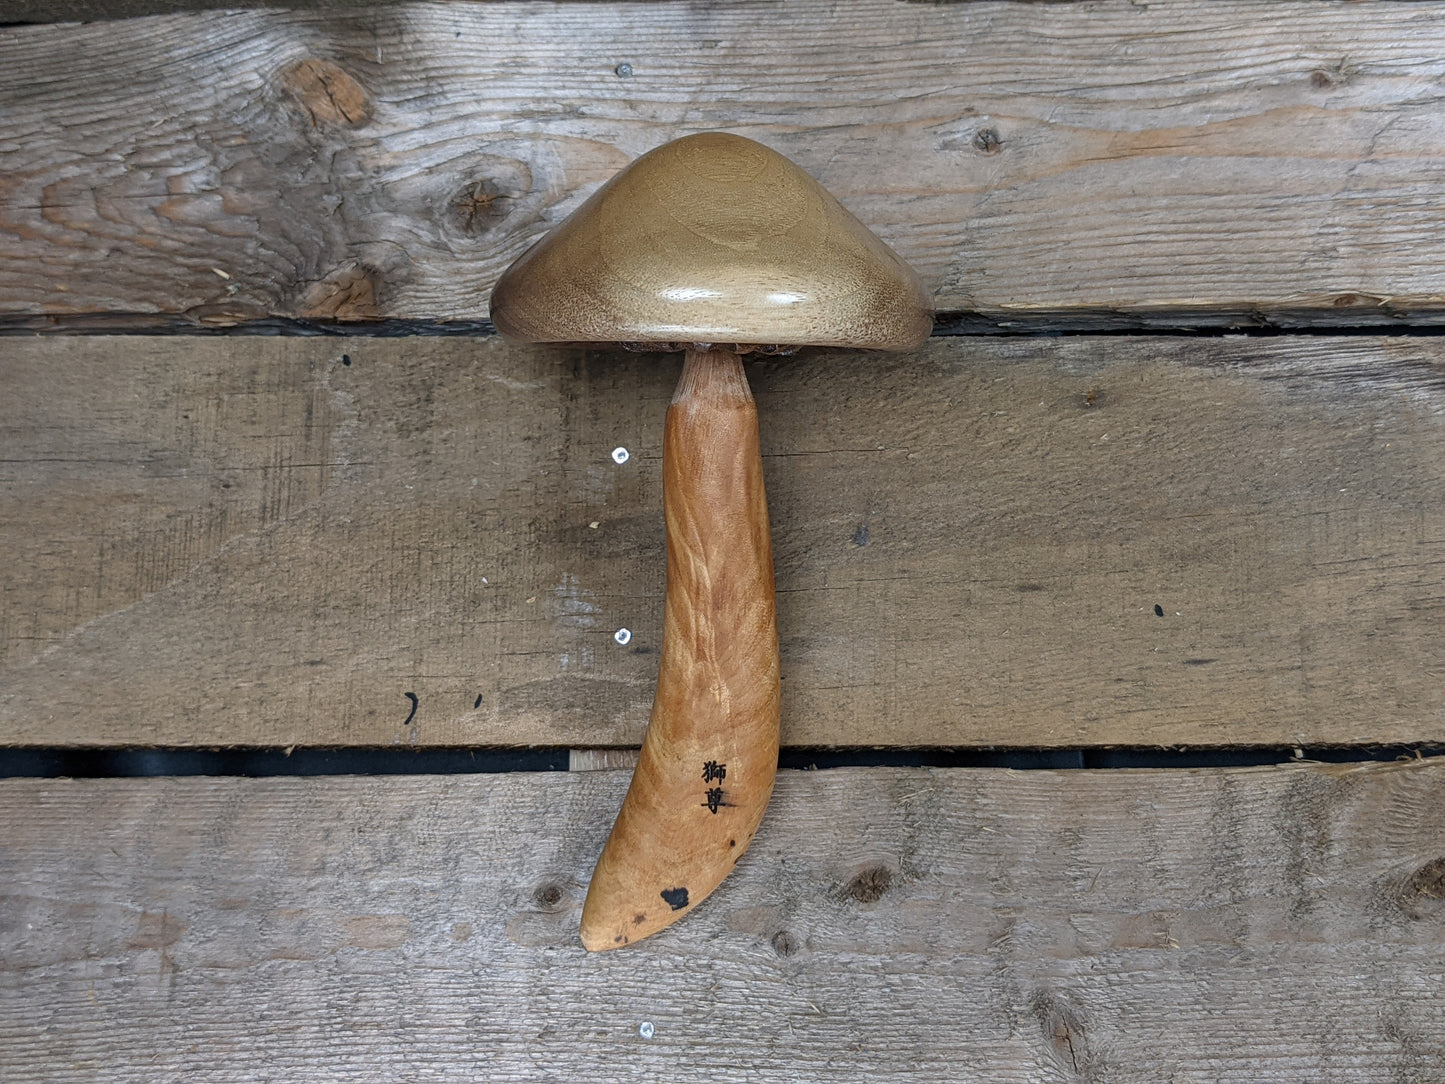 Black walnut and figured spalted maple darning mushroom